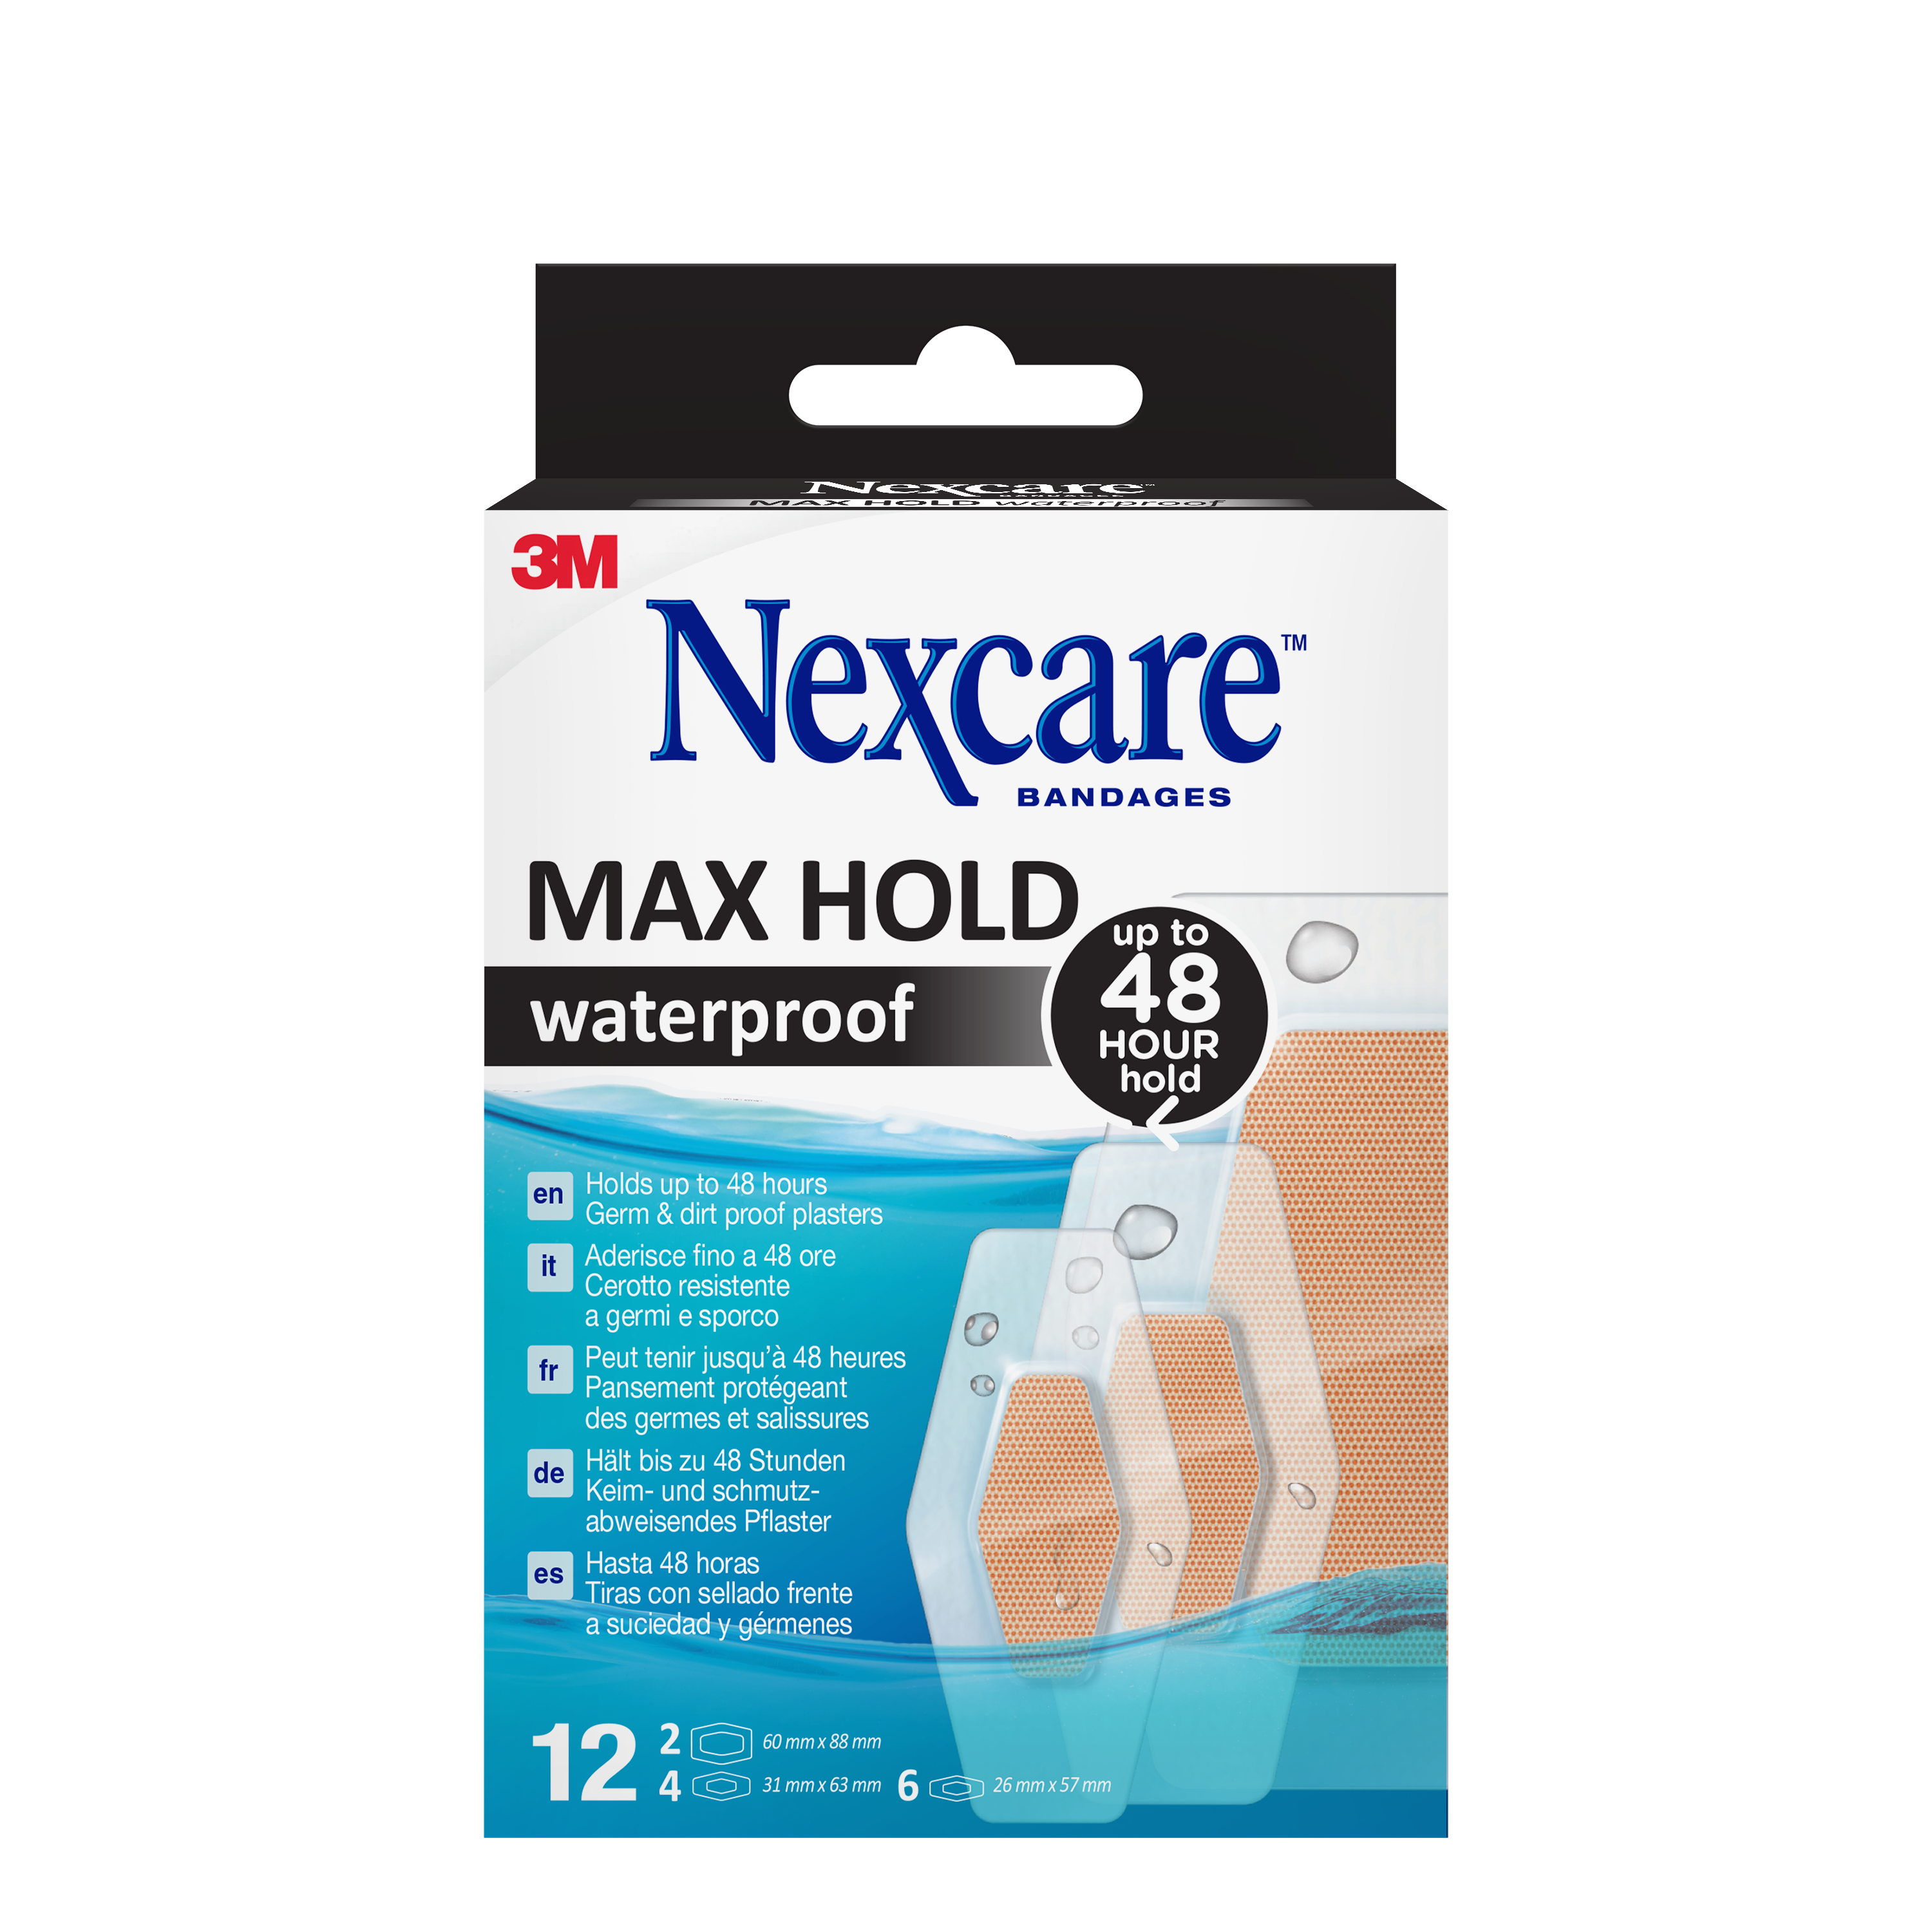 Nexcare™ Max Hold wasserfeste Pflaster, verschiedene Größen, 12 Stk.